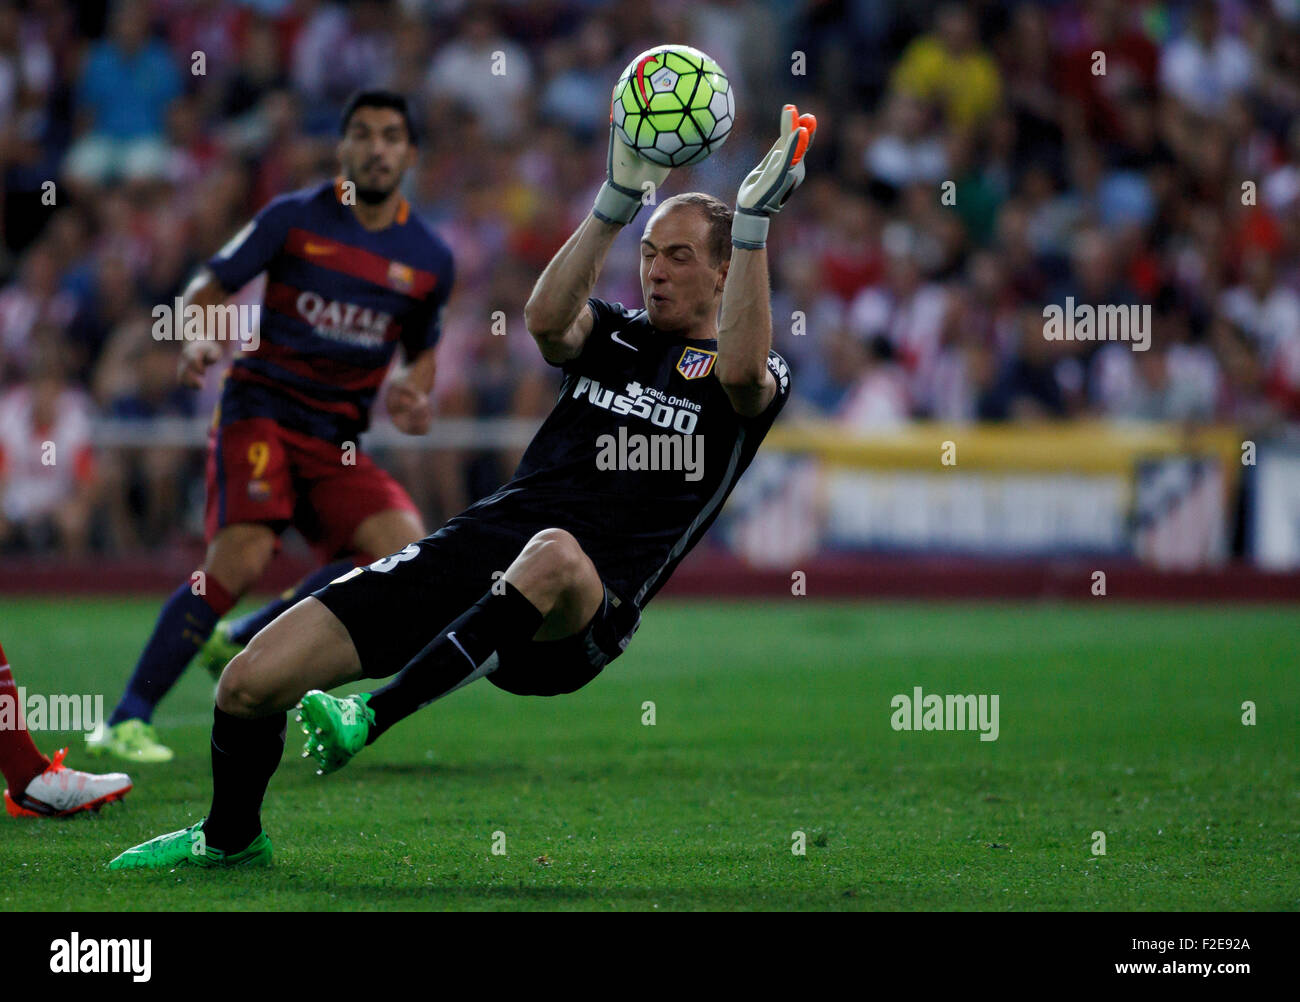 Spagna, Madrid:Atletico de Madrid portiere sloveno JAN OBLAK arresta la palla durante il campionato spagnolo 2015/16 Foto Stock